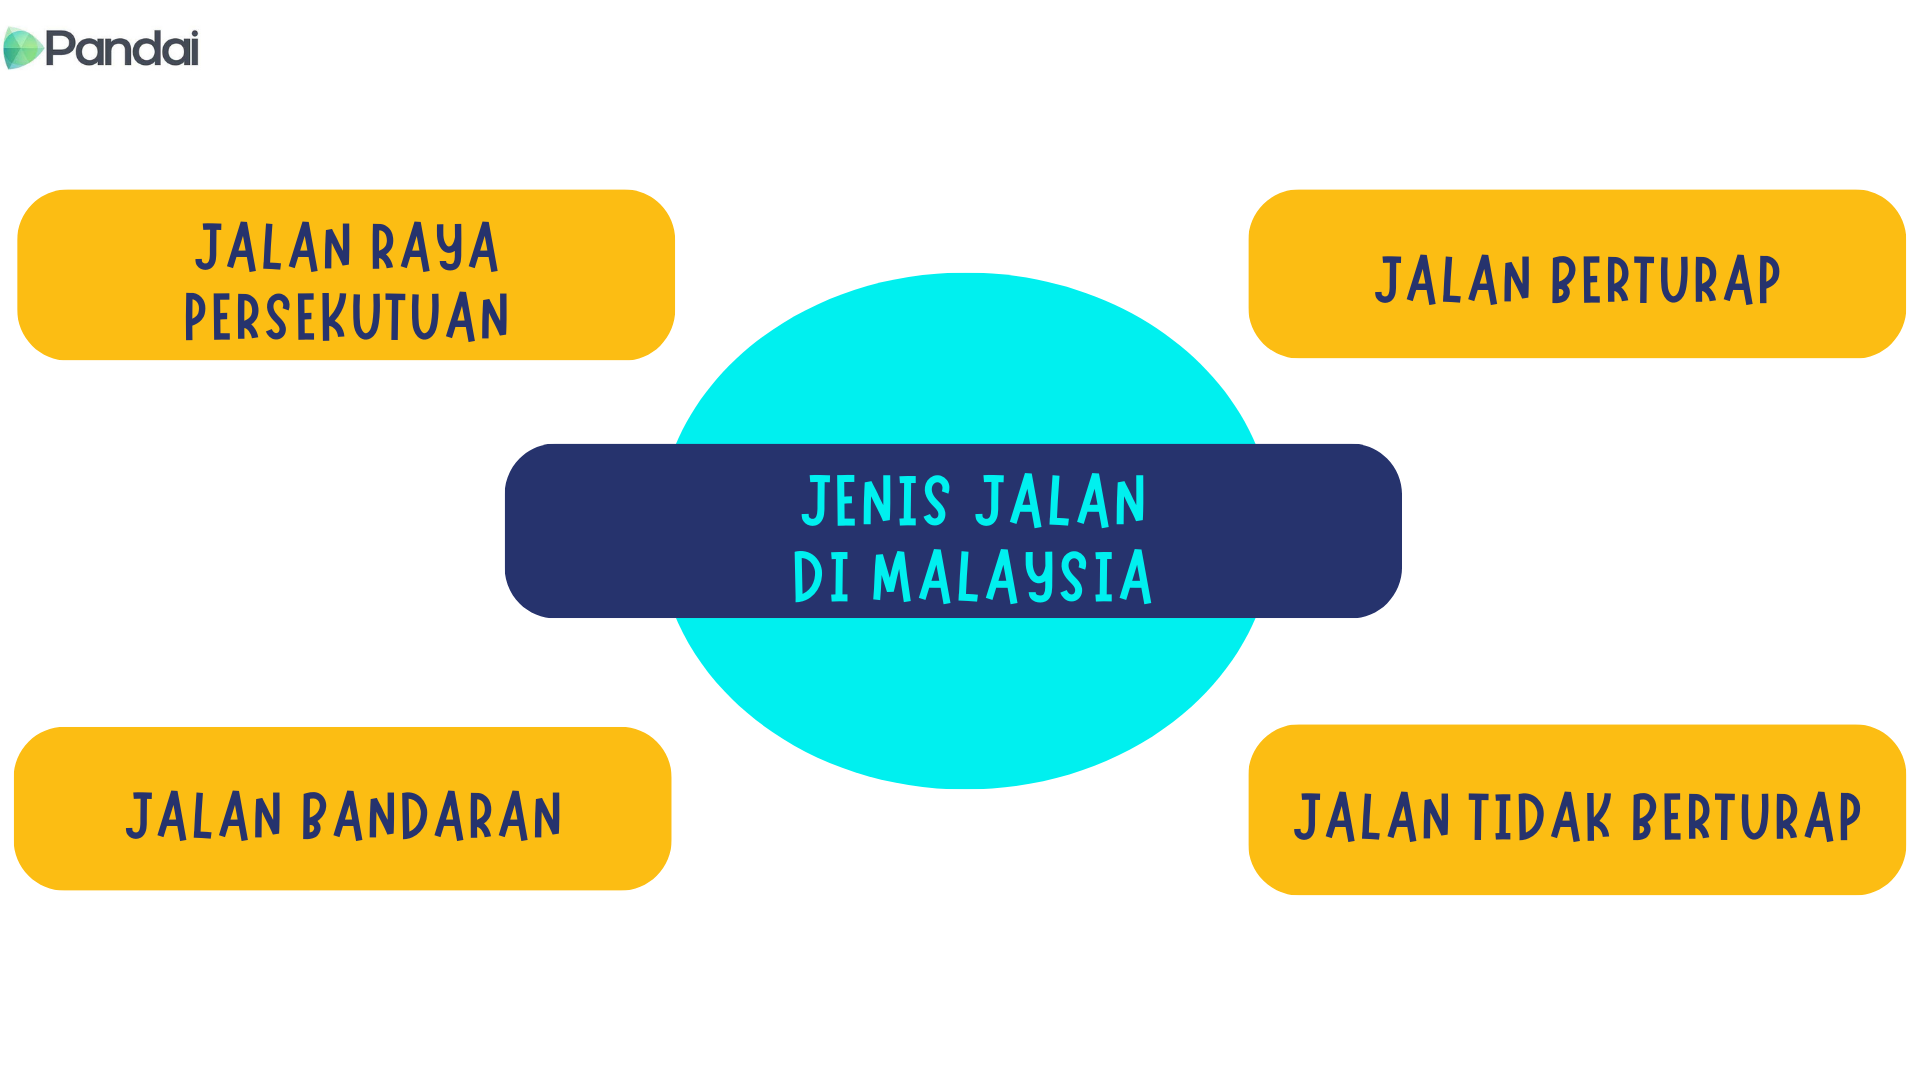 Gambar ini memaparkan jenis-jenis jalan yang terdapat di Malaysia dalam bentuk carta lingkaran. Teks utama di tengah lingkaran berwarna biru tua menyatakan 